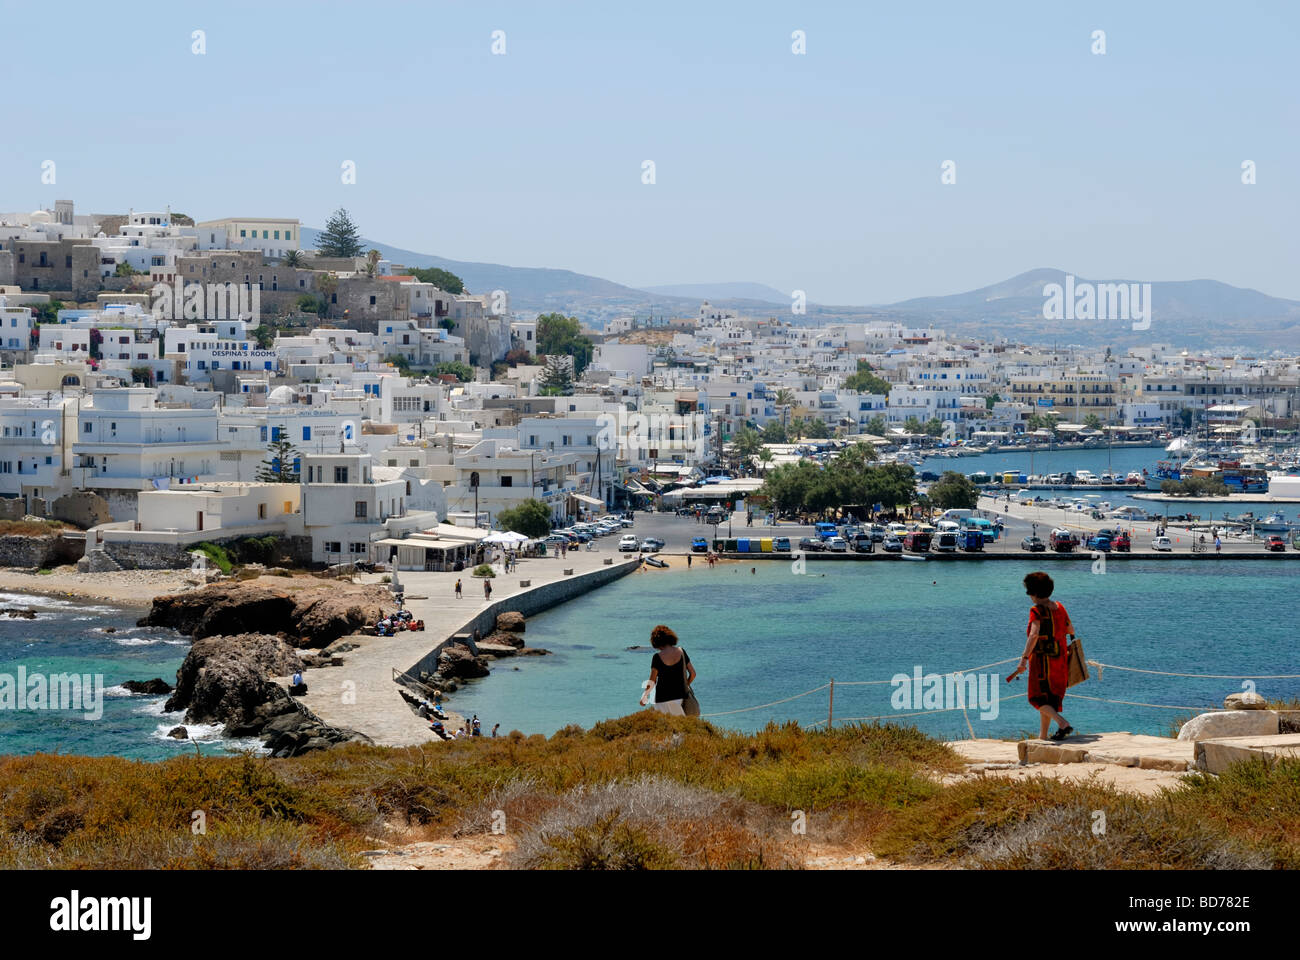 Une belle vue de l'île de Palatia à Hora 'la ville de Naxos". L'île de Palatia, Hora Naxos, Cyclades, Grèce, Europe. Banque D'Images